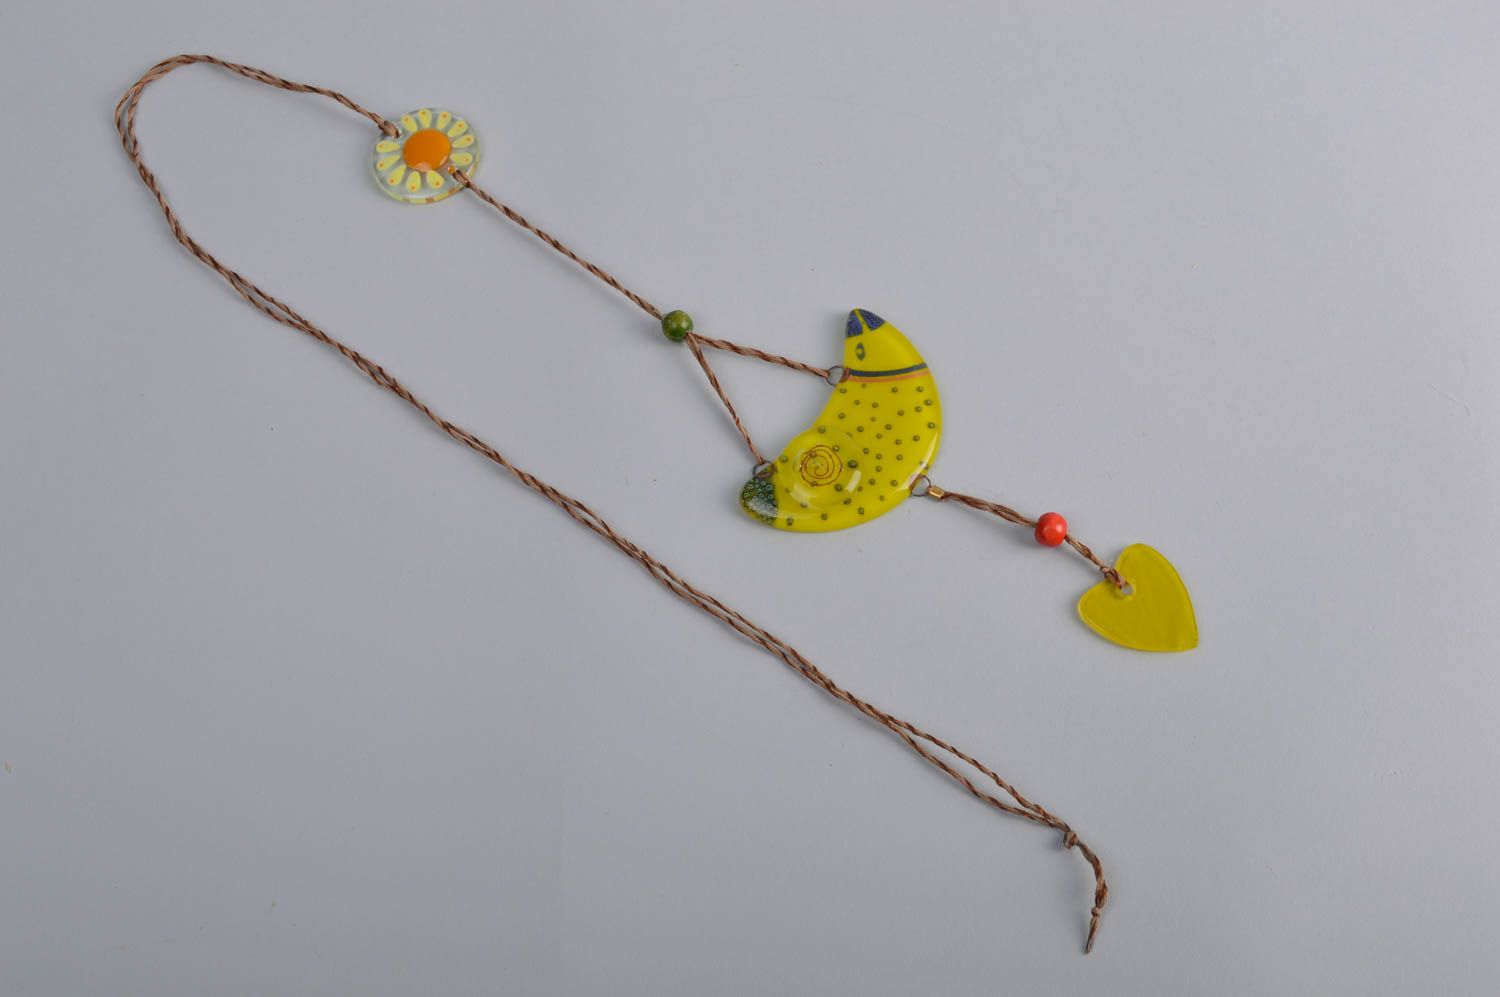 Интерьерная подвеска в технике фьюзинг в виде птицы желтая милая ручной работы  фото 3